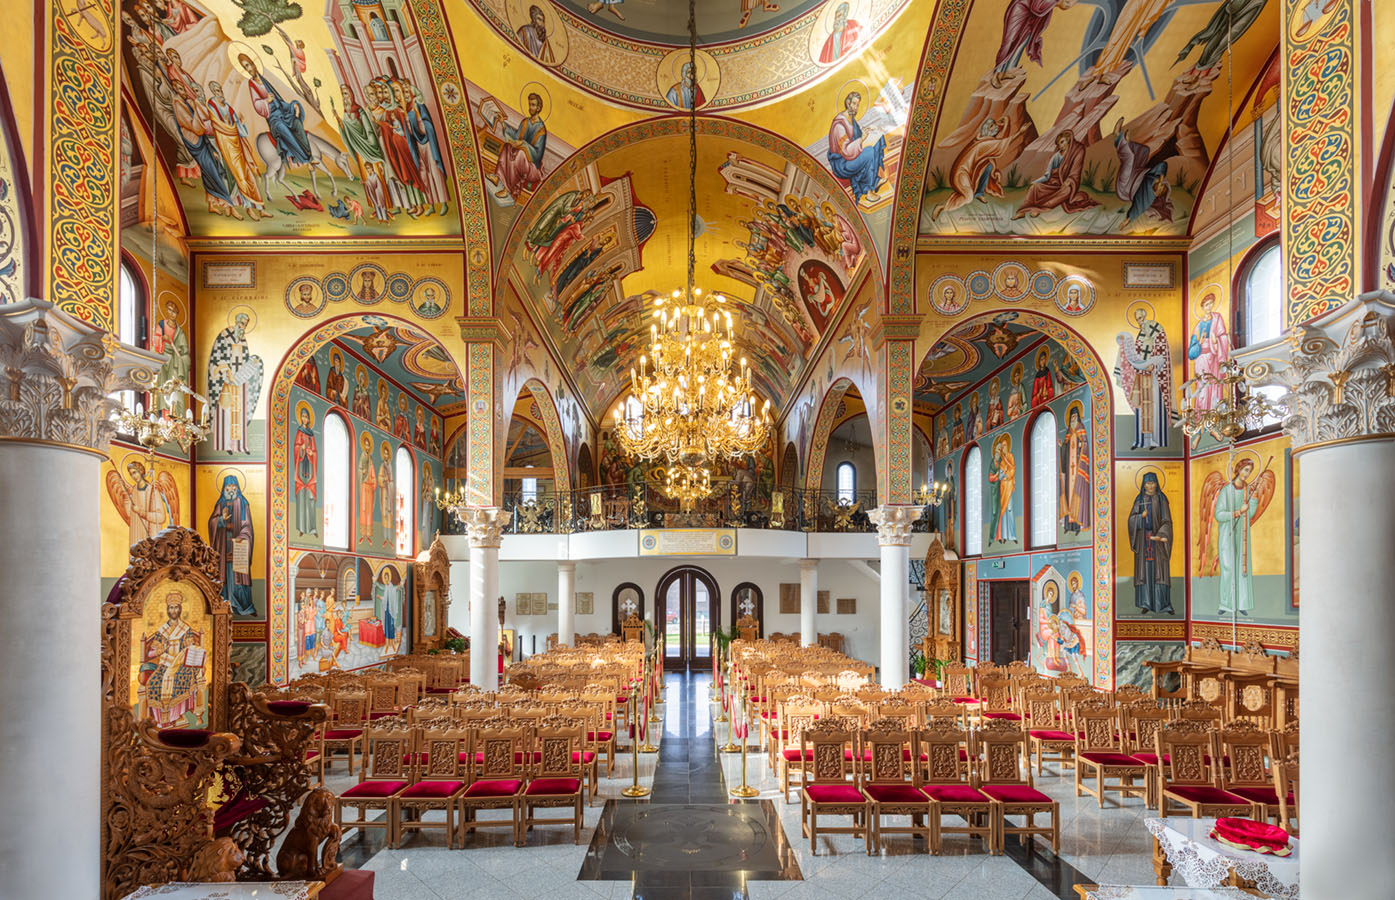 Griechisch-orthodoxe Kirche "Hl. Dimitrios", Herten